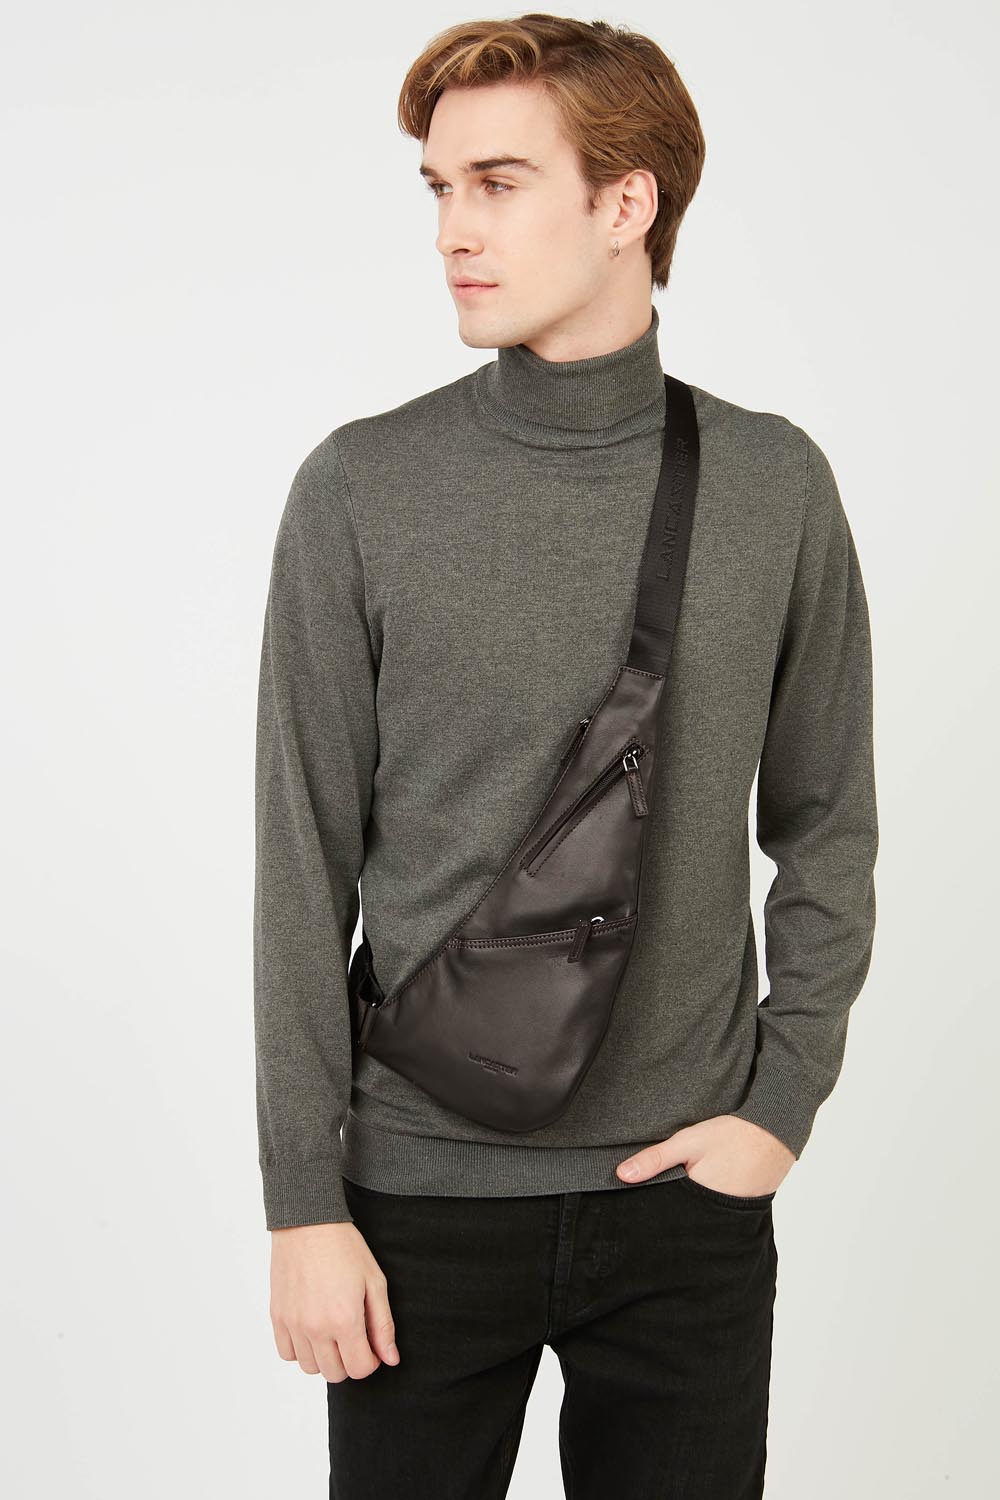 body bag - soft vintage homme #couleur_marron